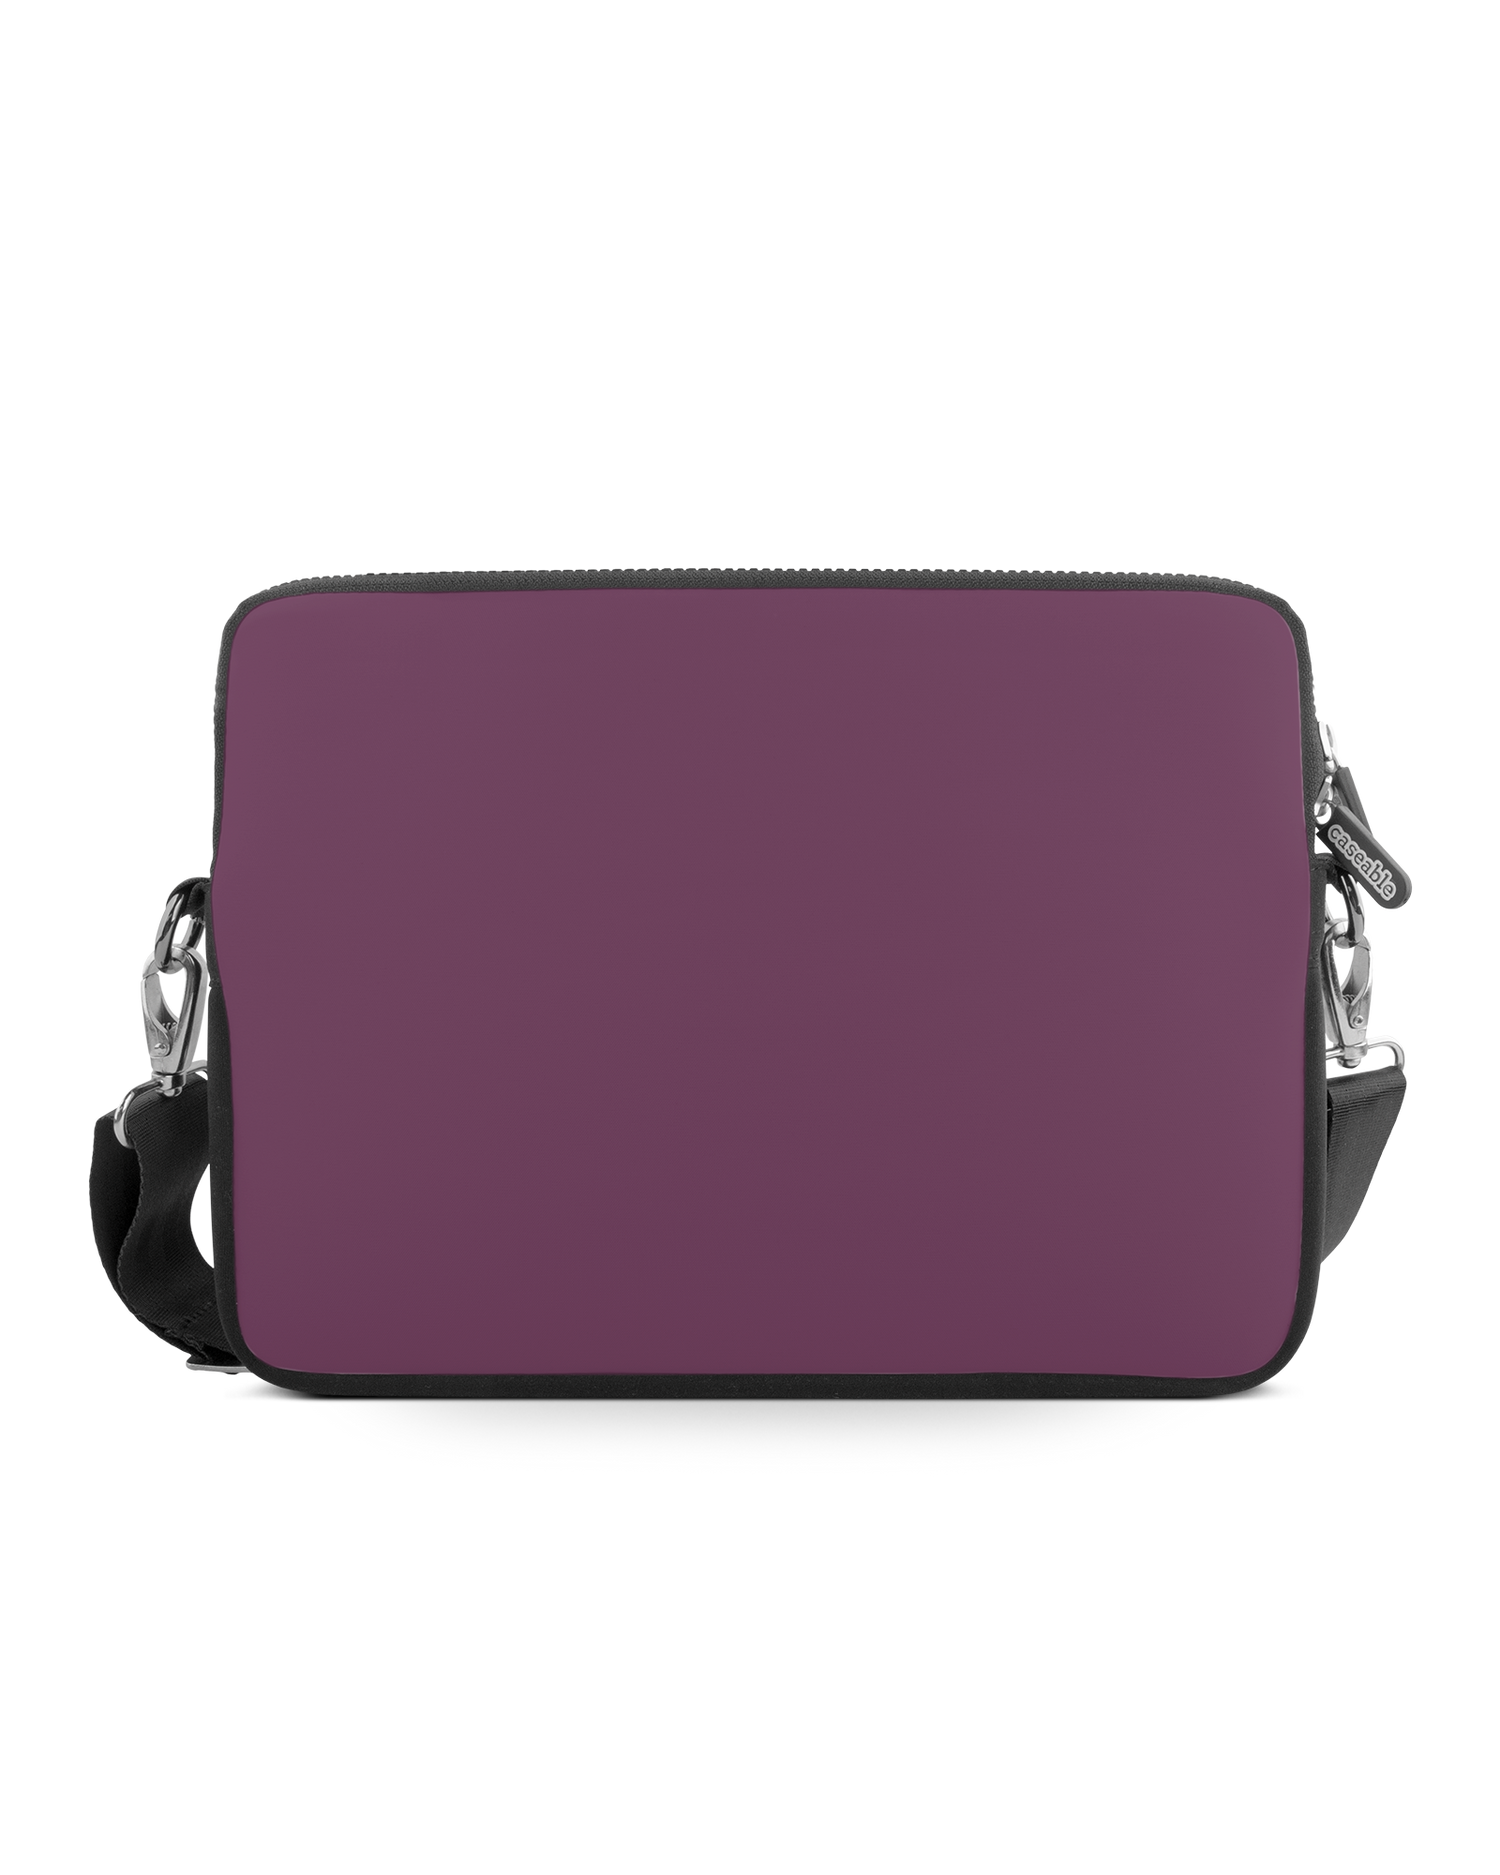 PLUM Premium Laptoptasche 15 Zoll: Vorderansicht